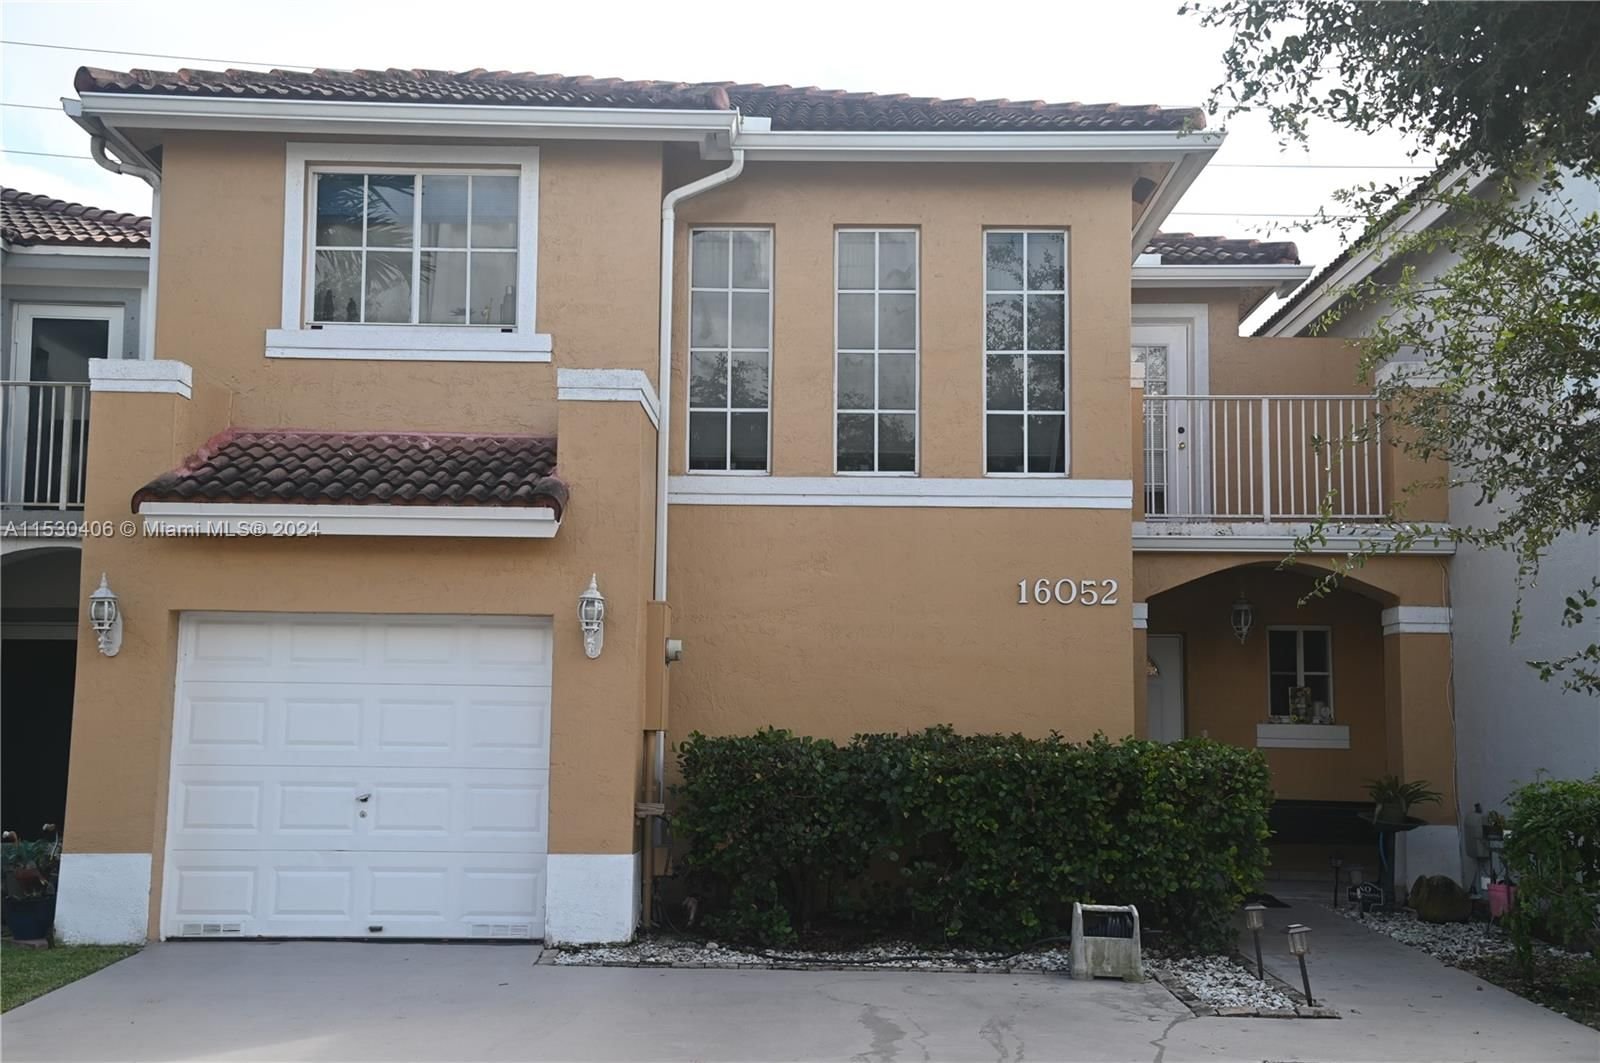 Real estate property located at 16052 87th Ter, Miami-Dade County, BRISTOL POINTE, Miami, FL